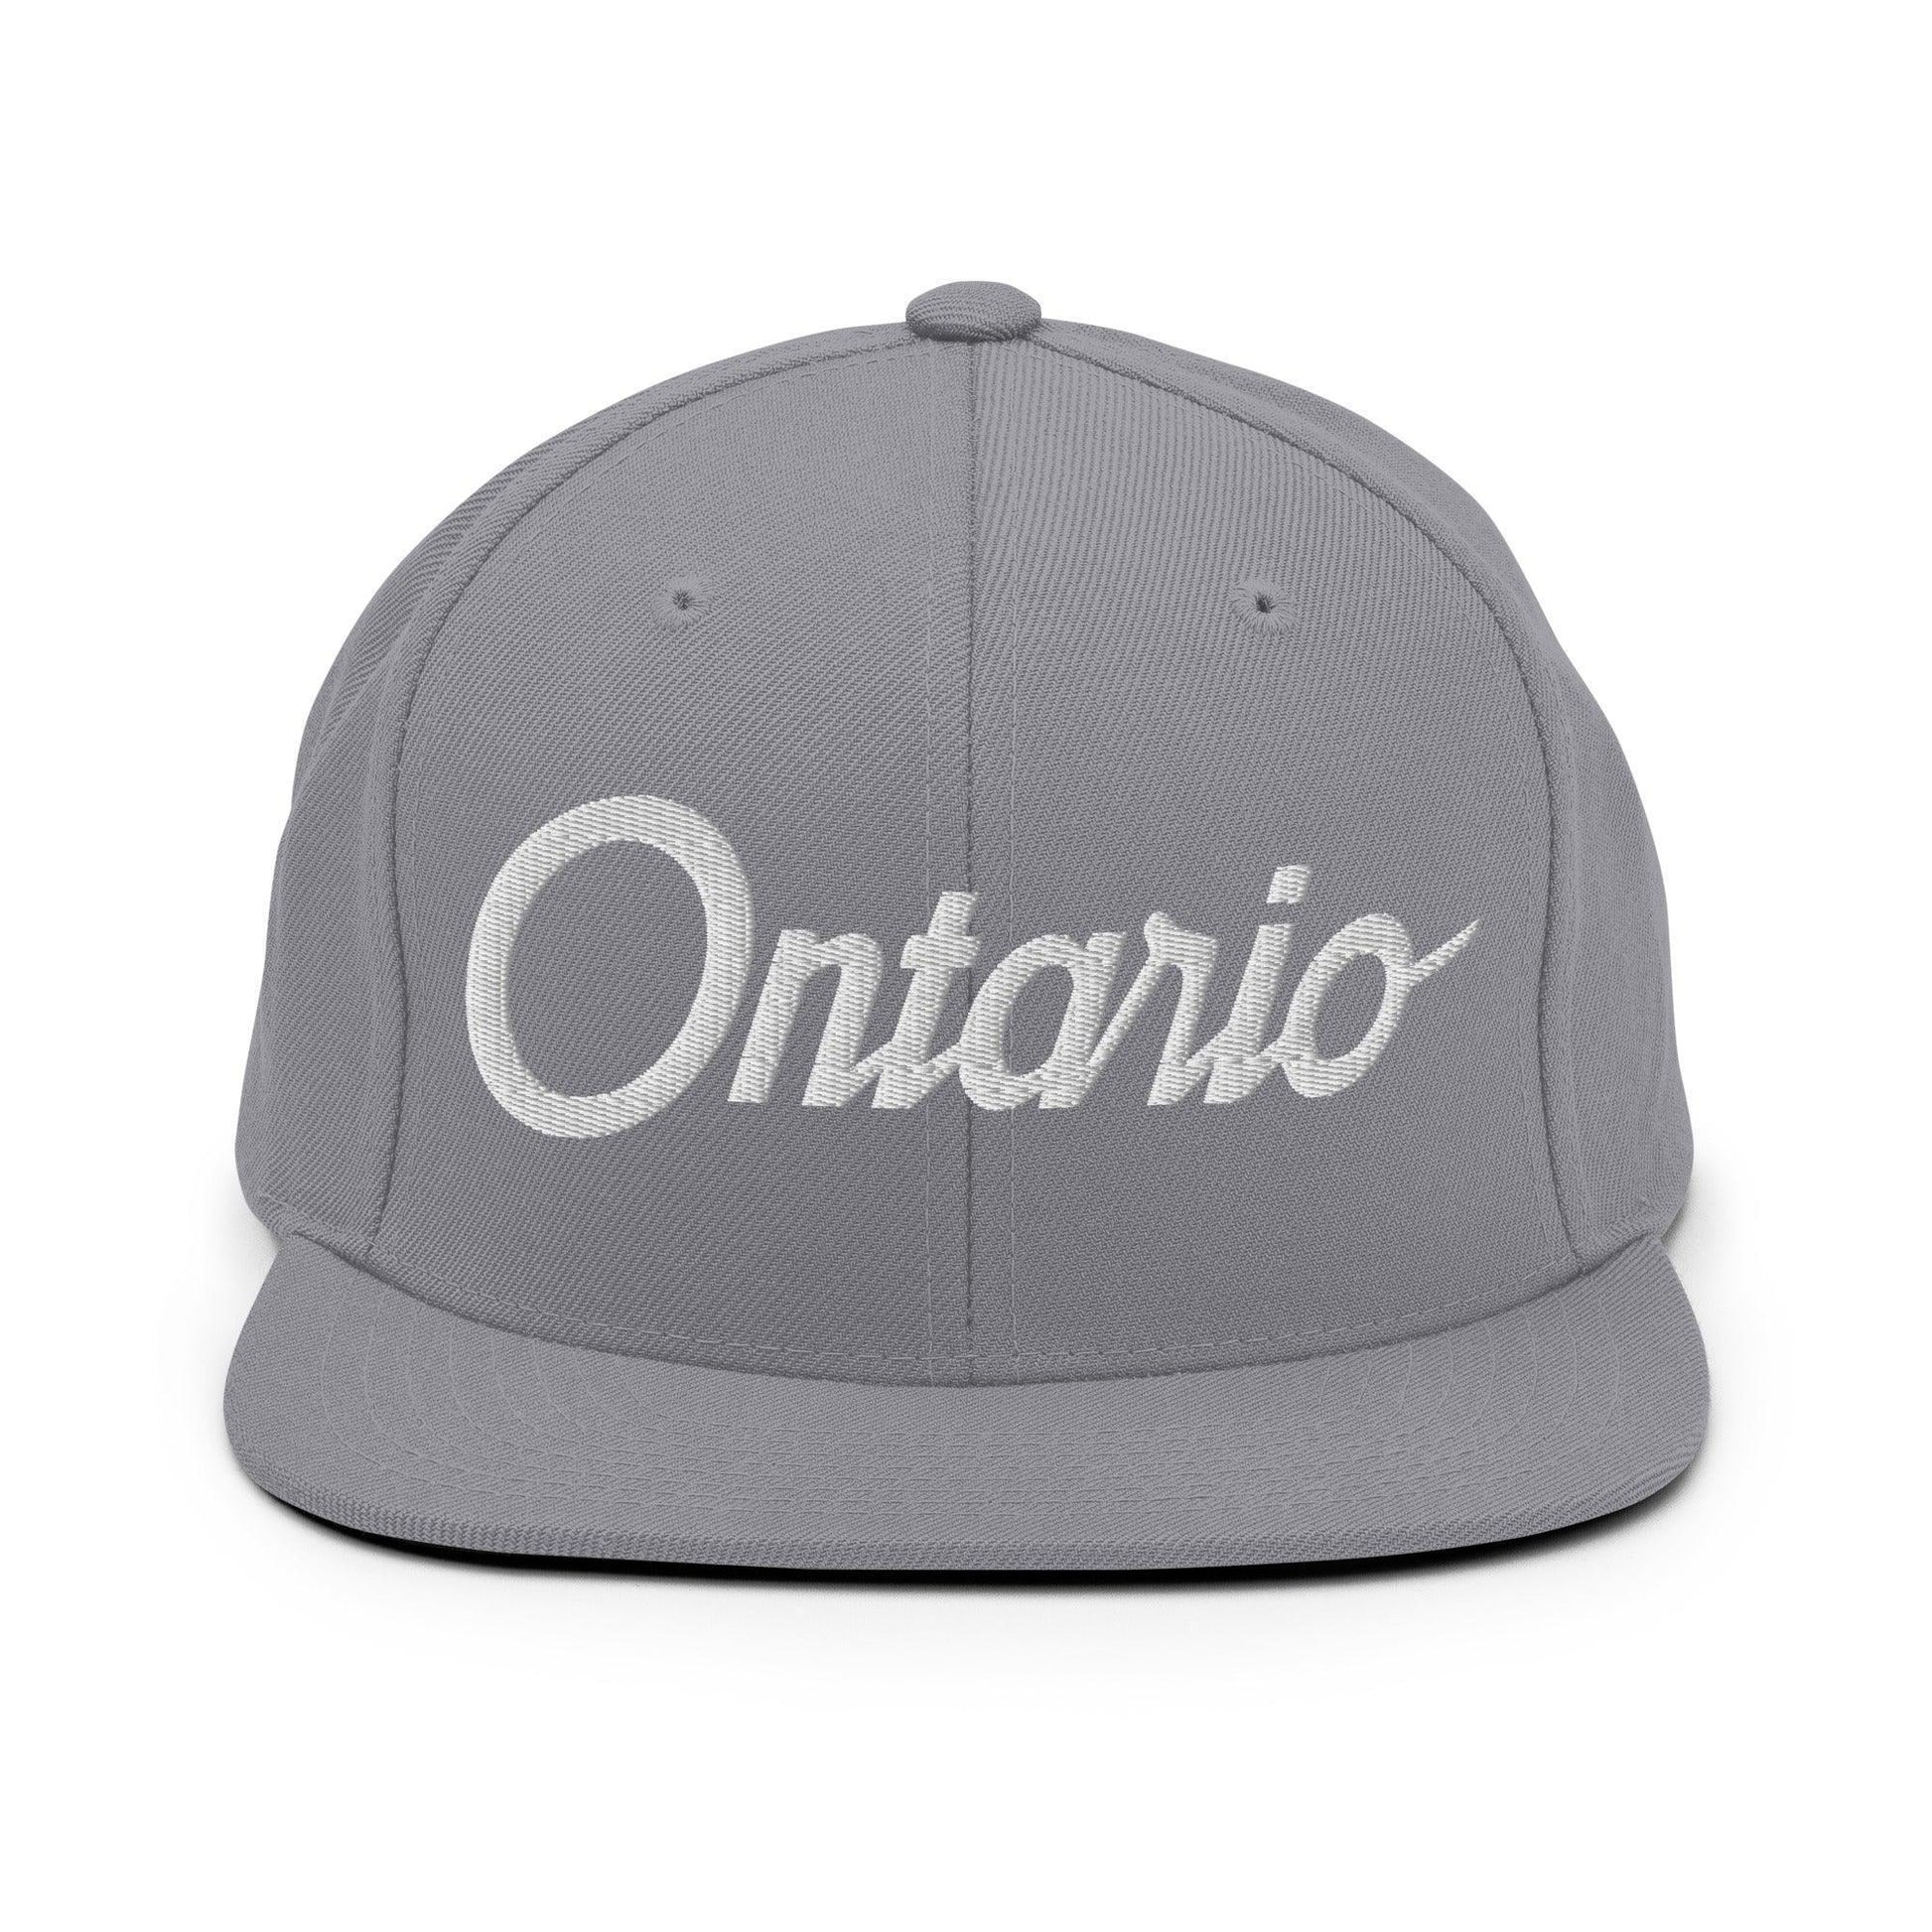 Ontario Script Snapback Hat Silver